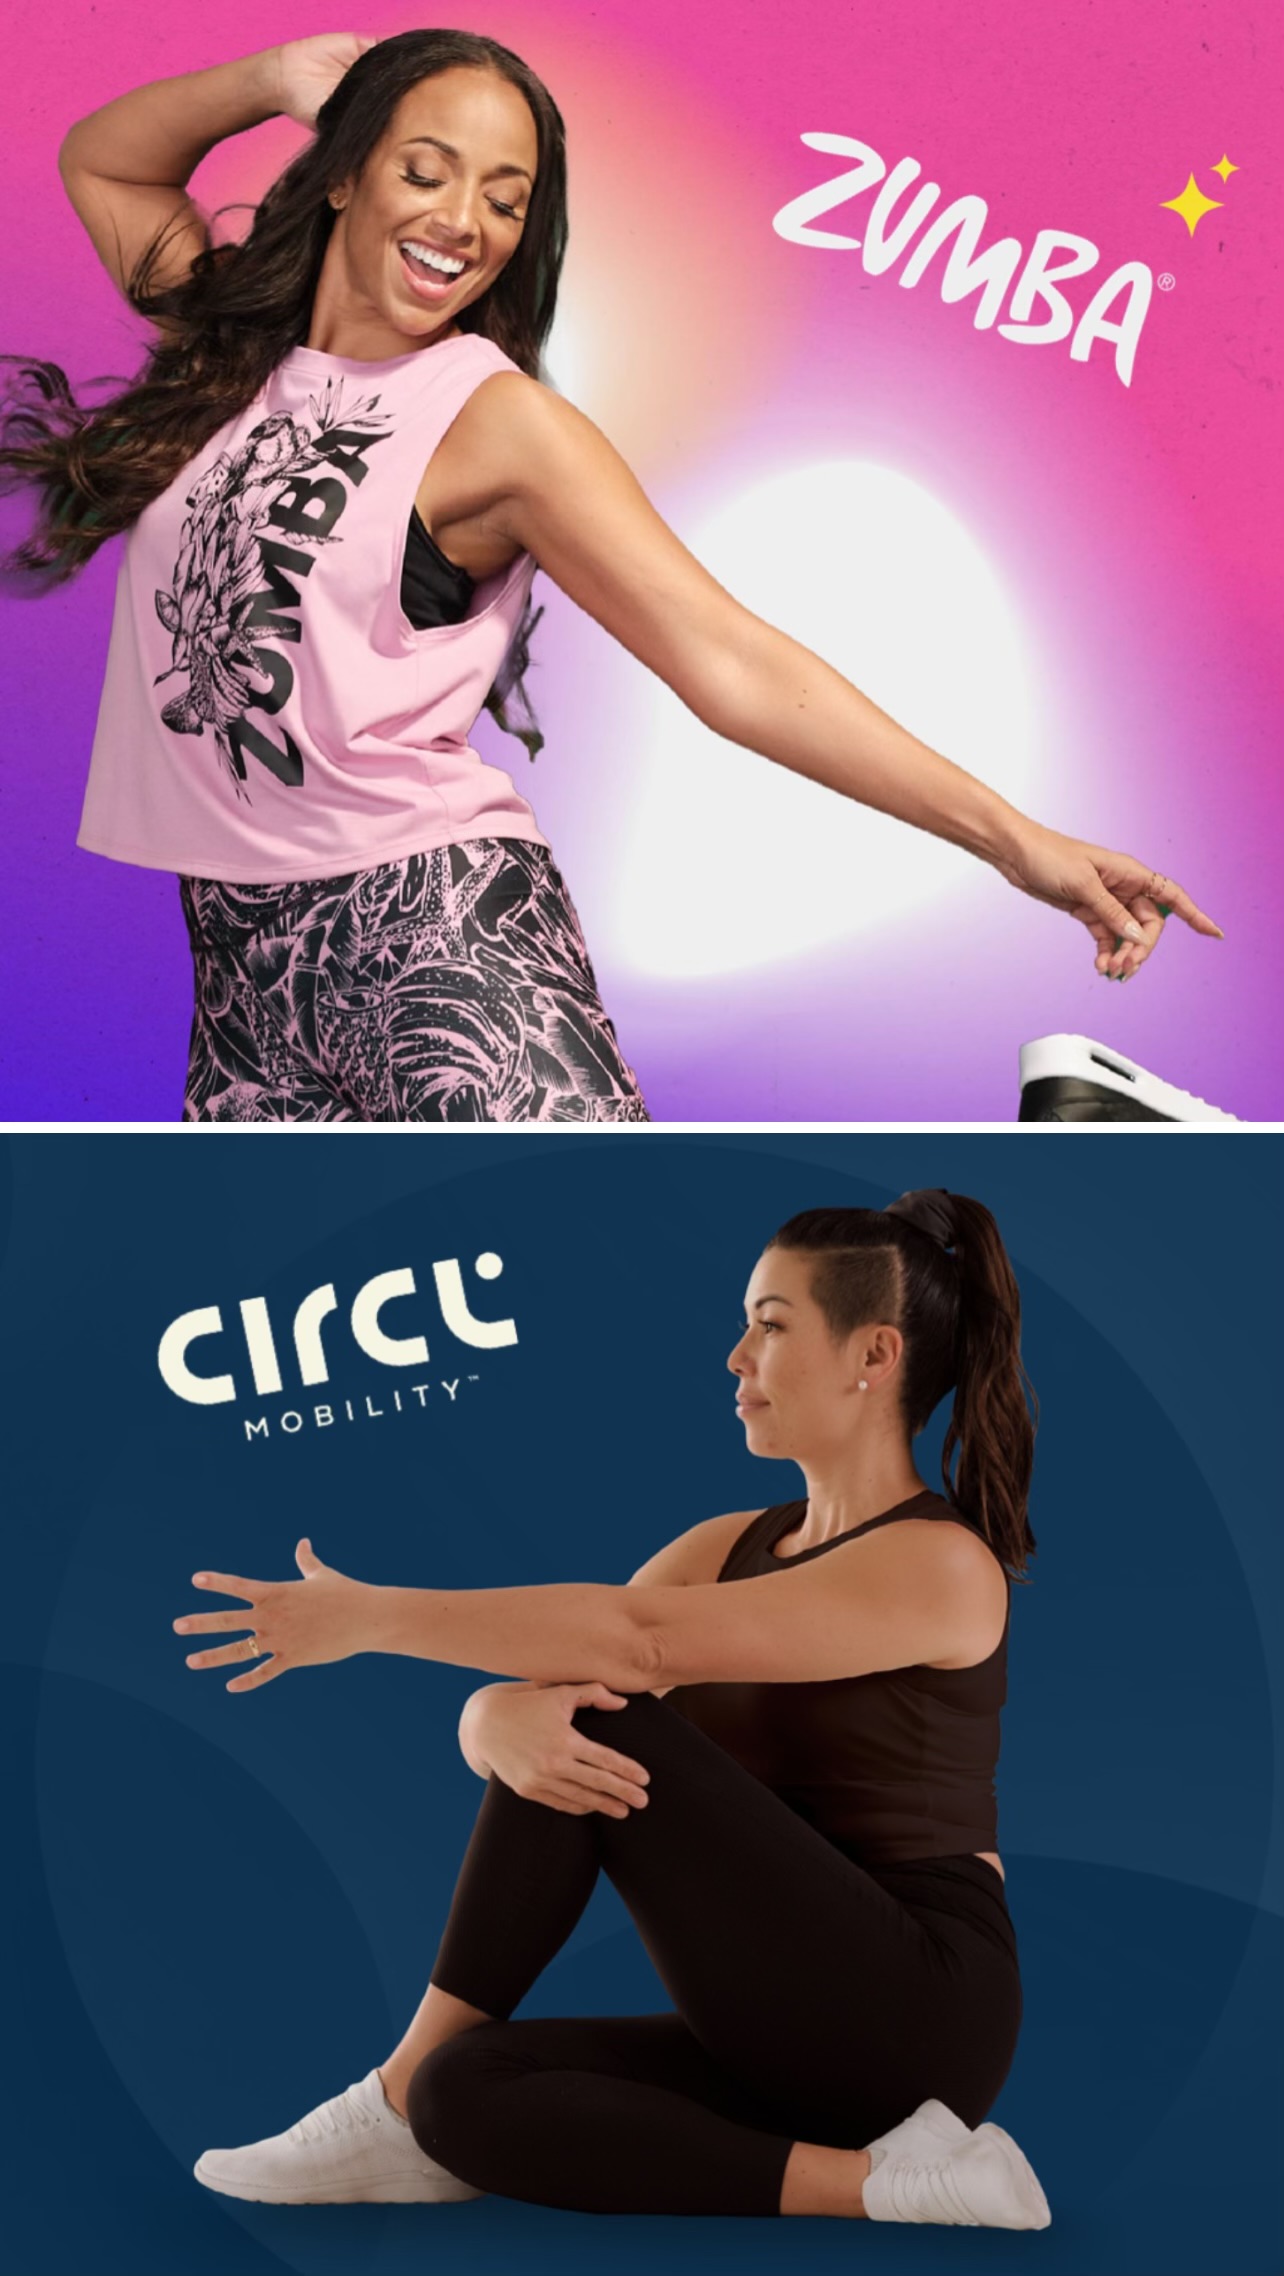 Zumba und Circl Mobility - Wellness und Fitness in einem - Tanzen und auspowern - Wohlfühlübungen und sanftes Bewegen auf der Matte